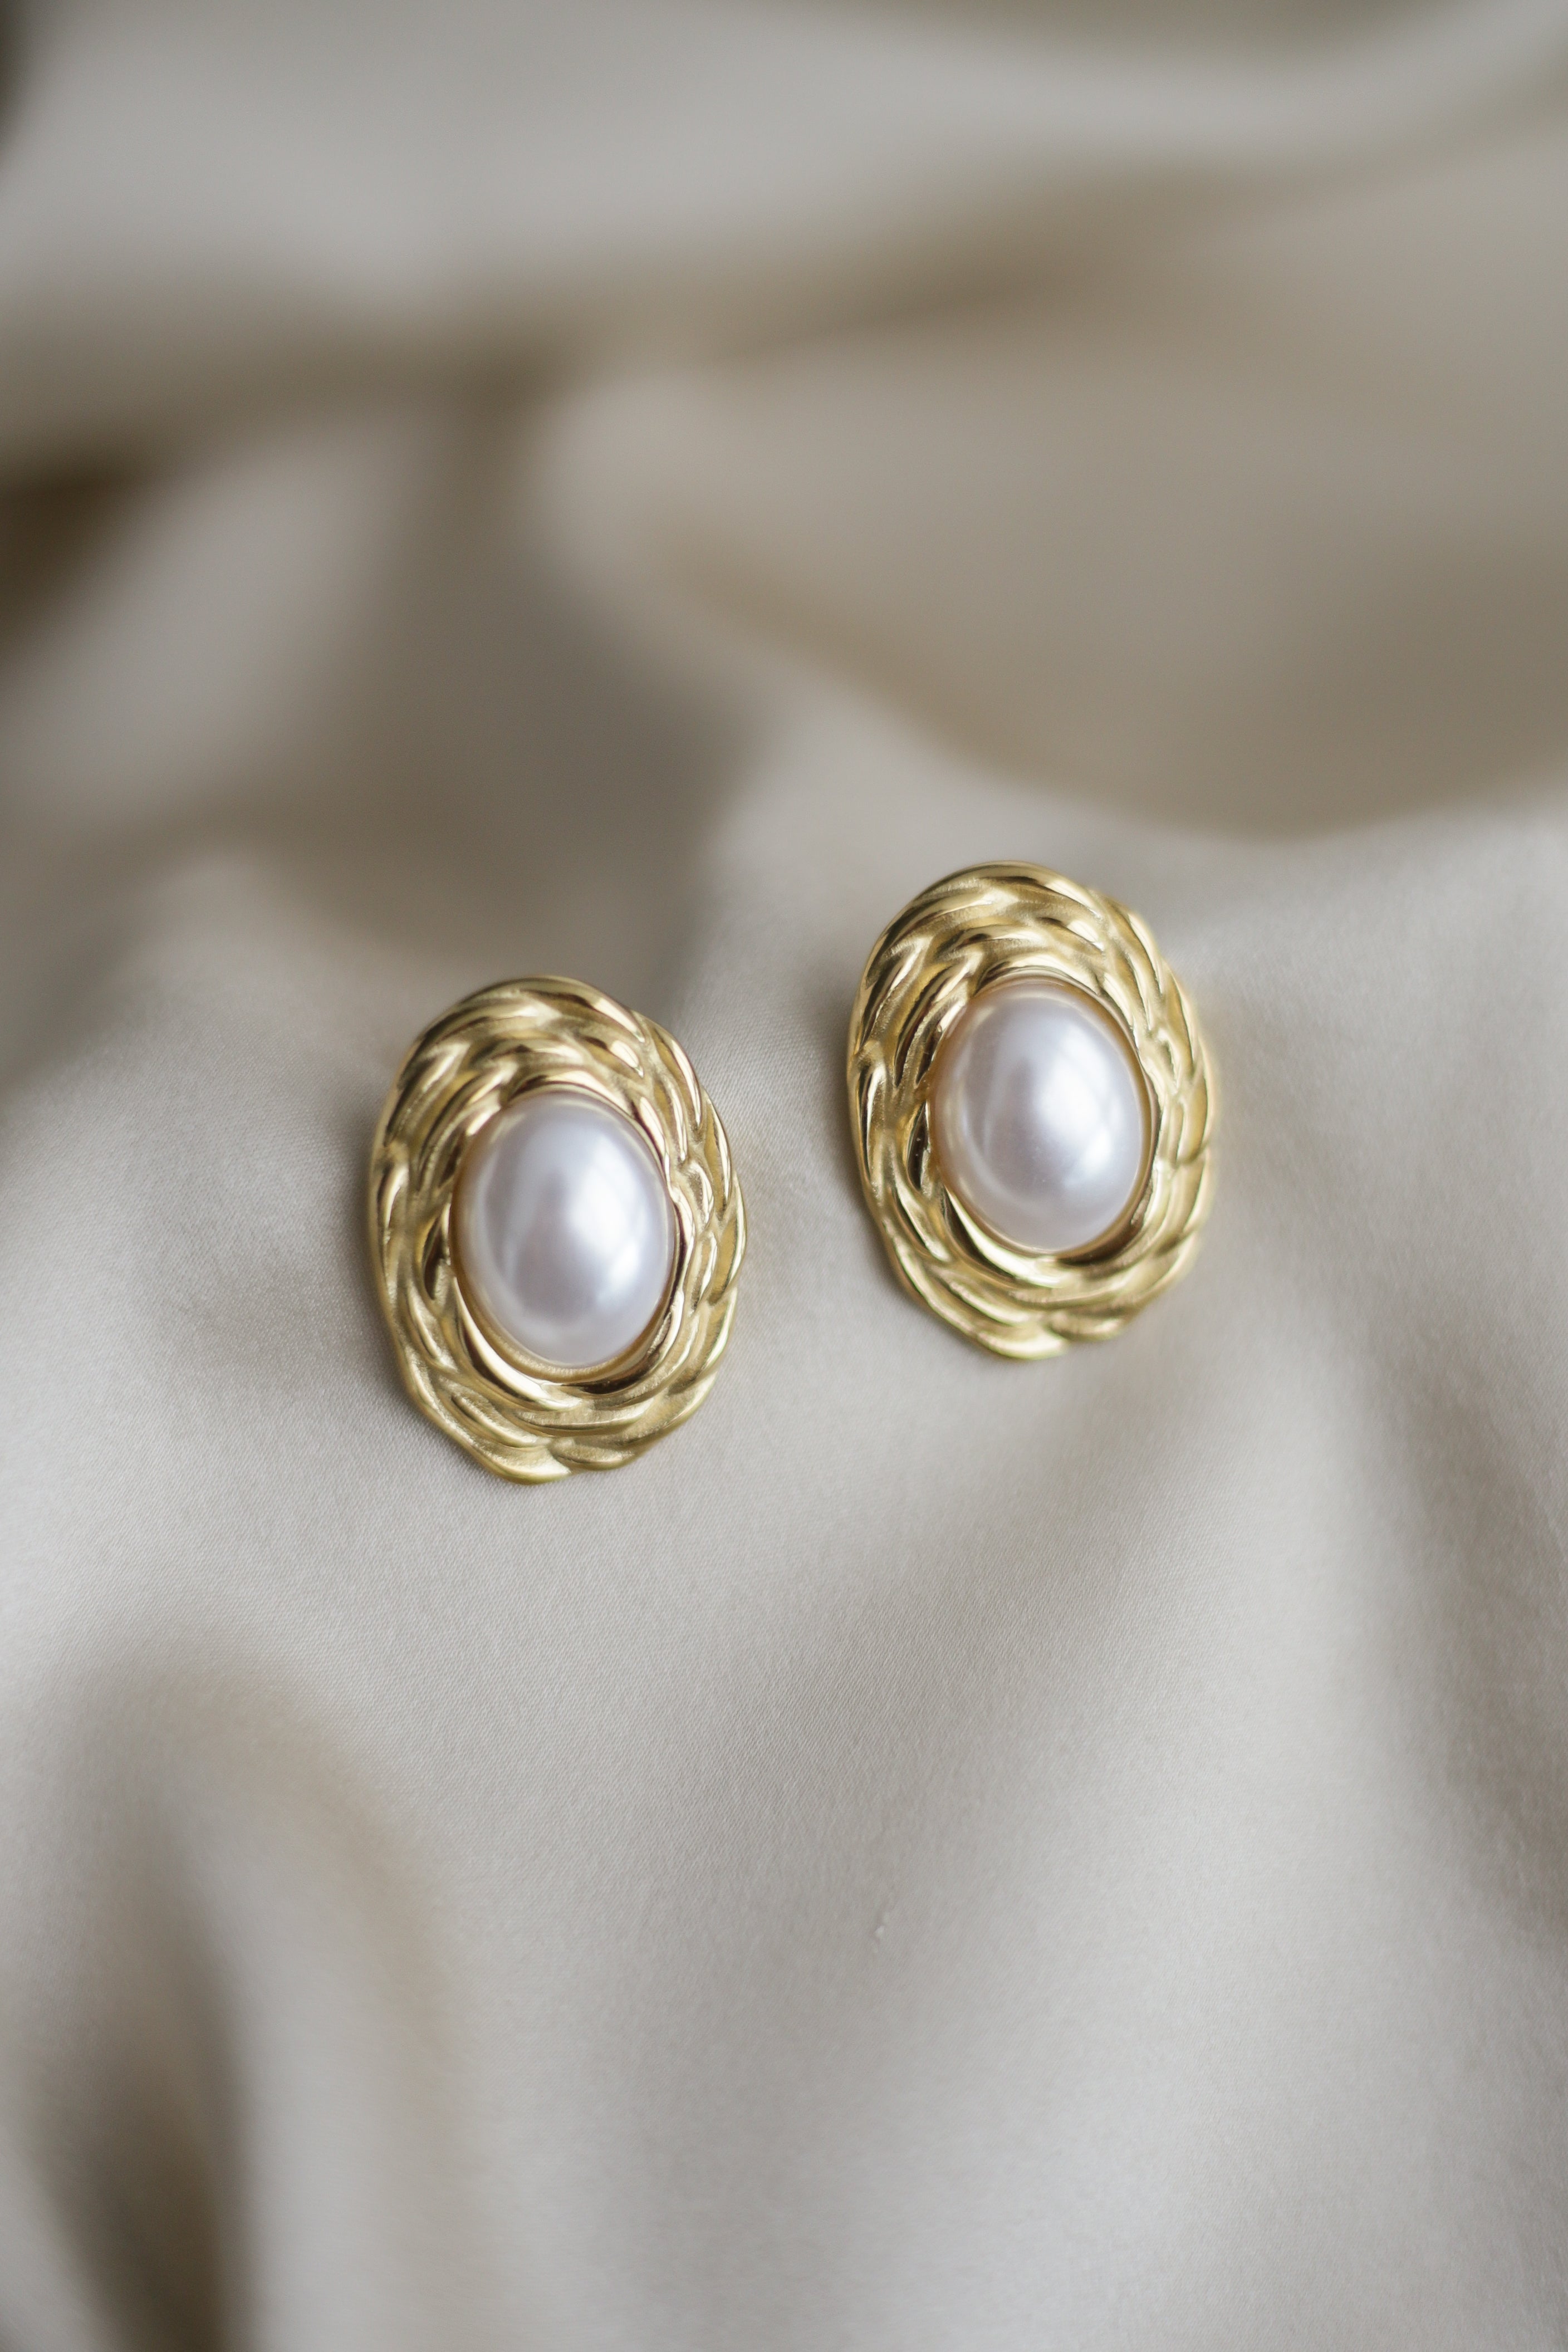 Weave & Pearl Statement Earrings